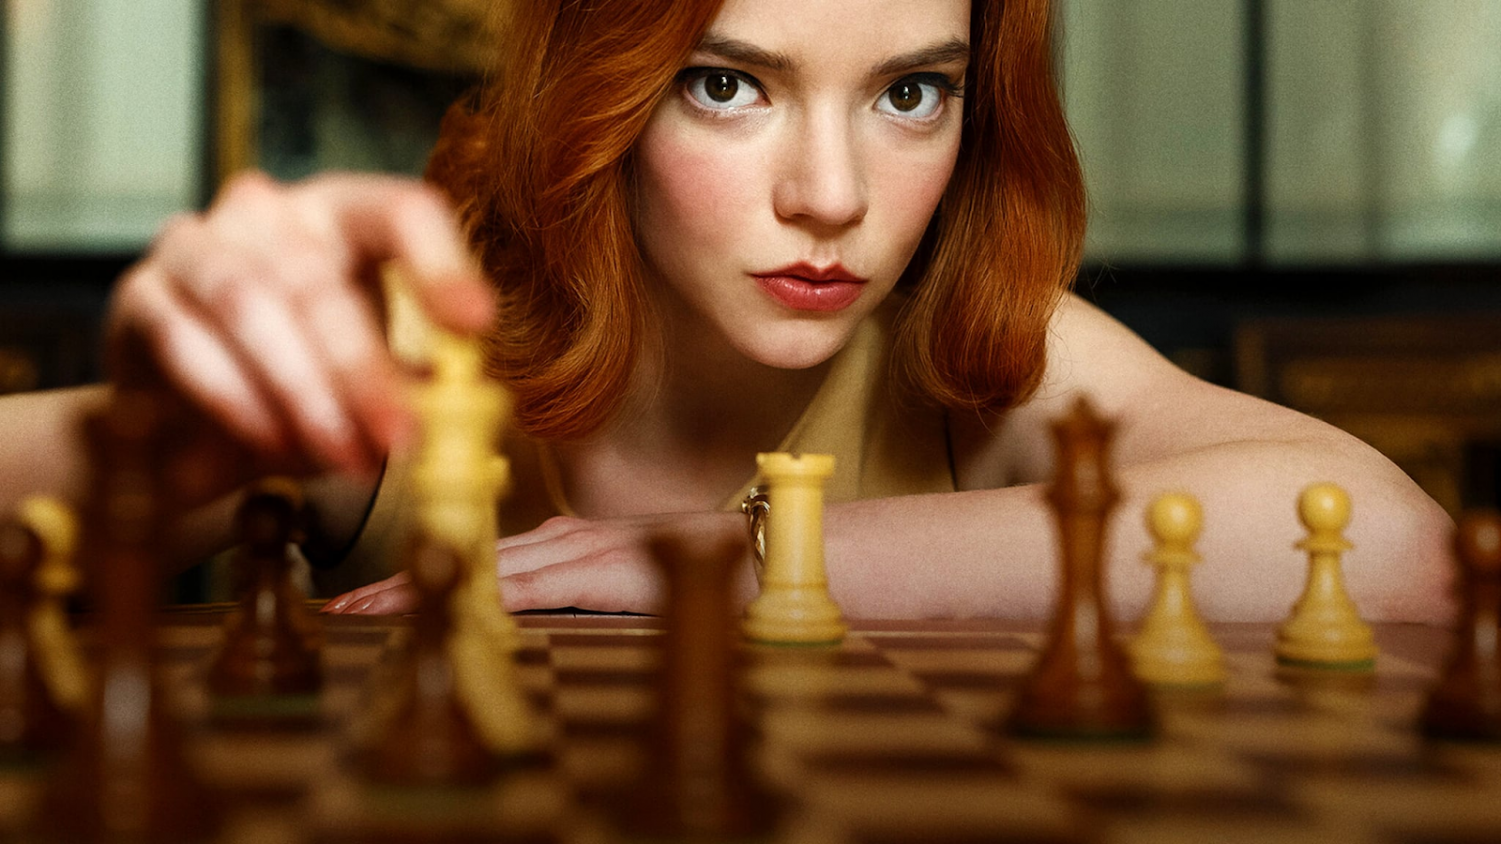 The Chessplayer (2017) - IMDb